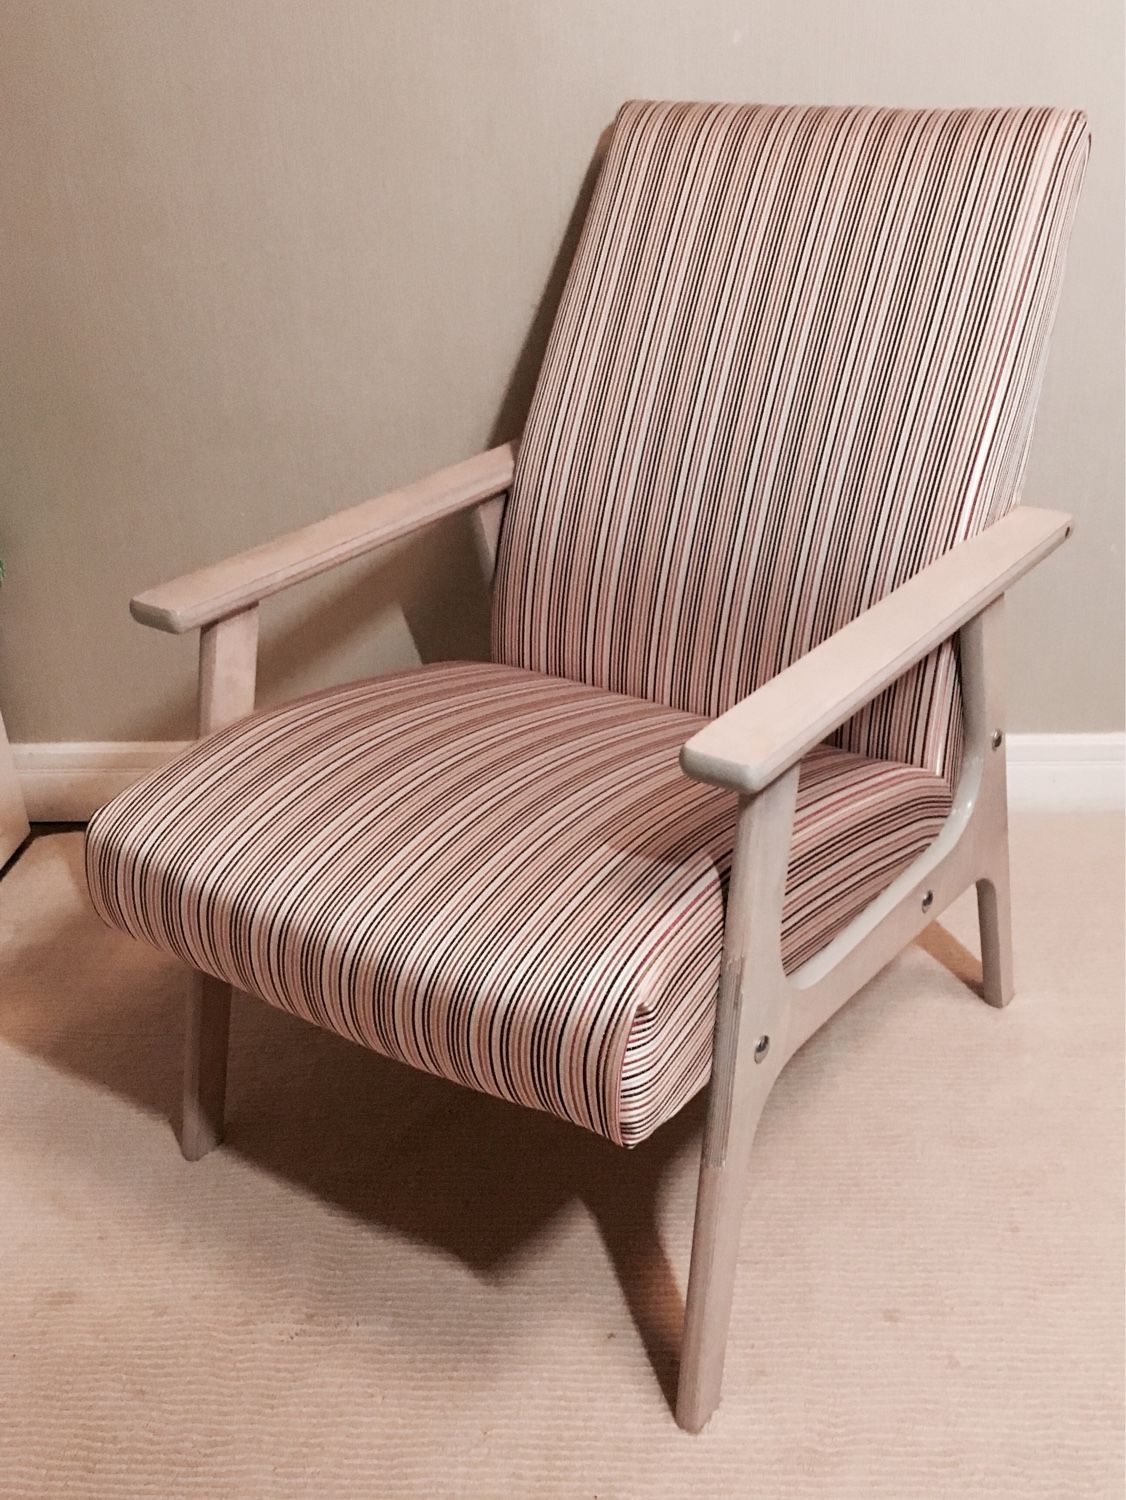 Реставрация деревянного кресла. Советское кресло. Старое советское кресло. Старого кресла с деревянными подлокотниками. Реставрируем старое кресло.